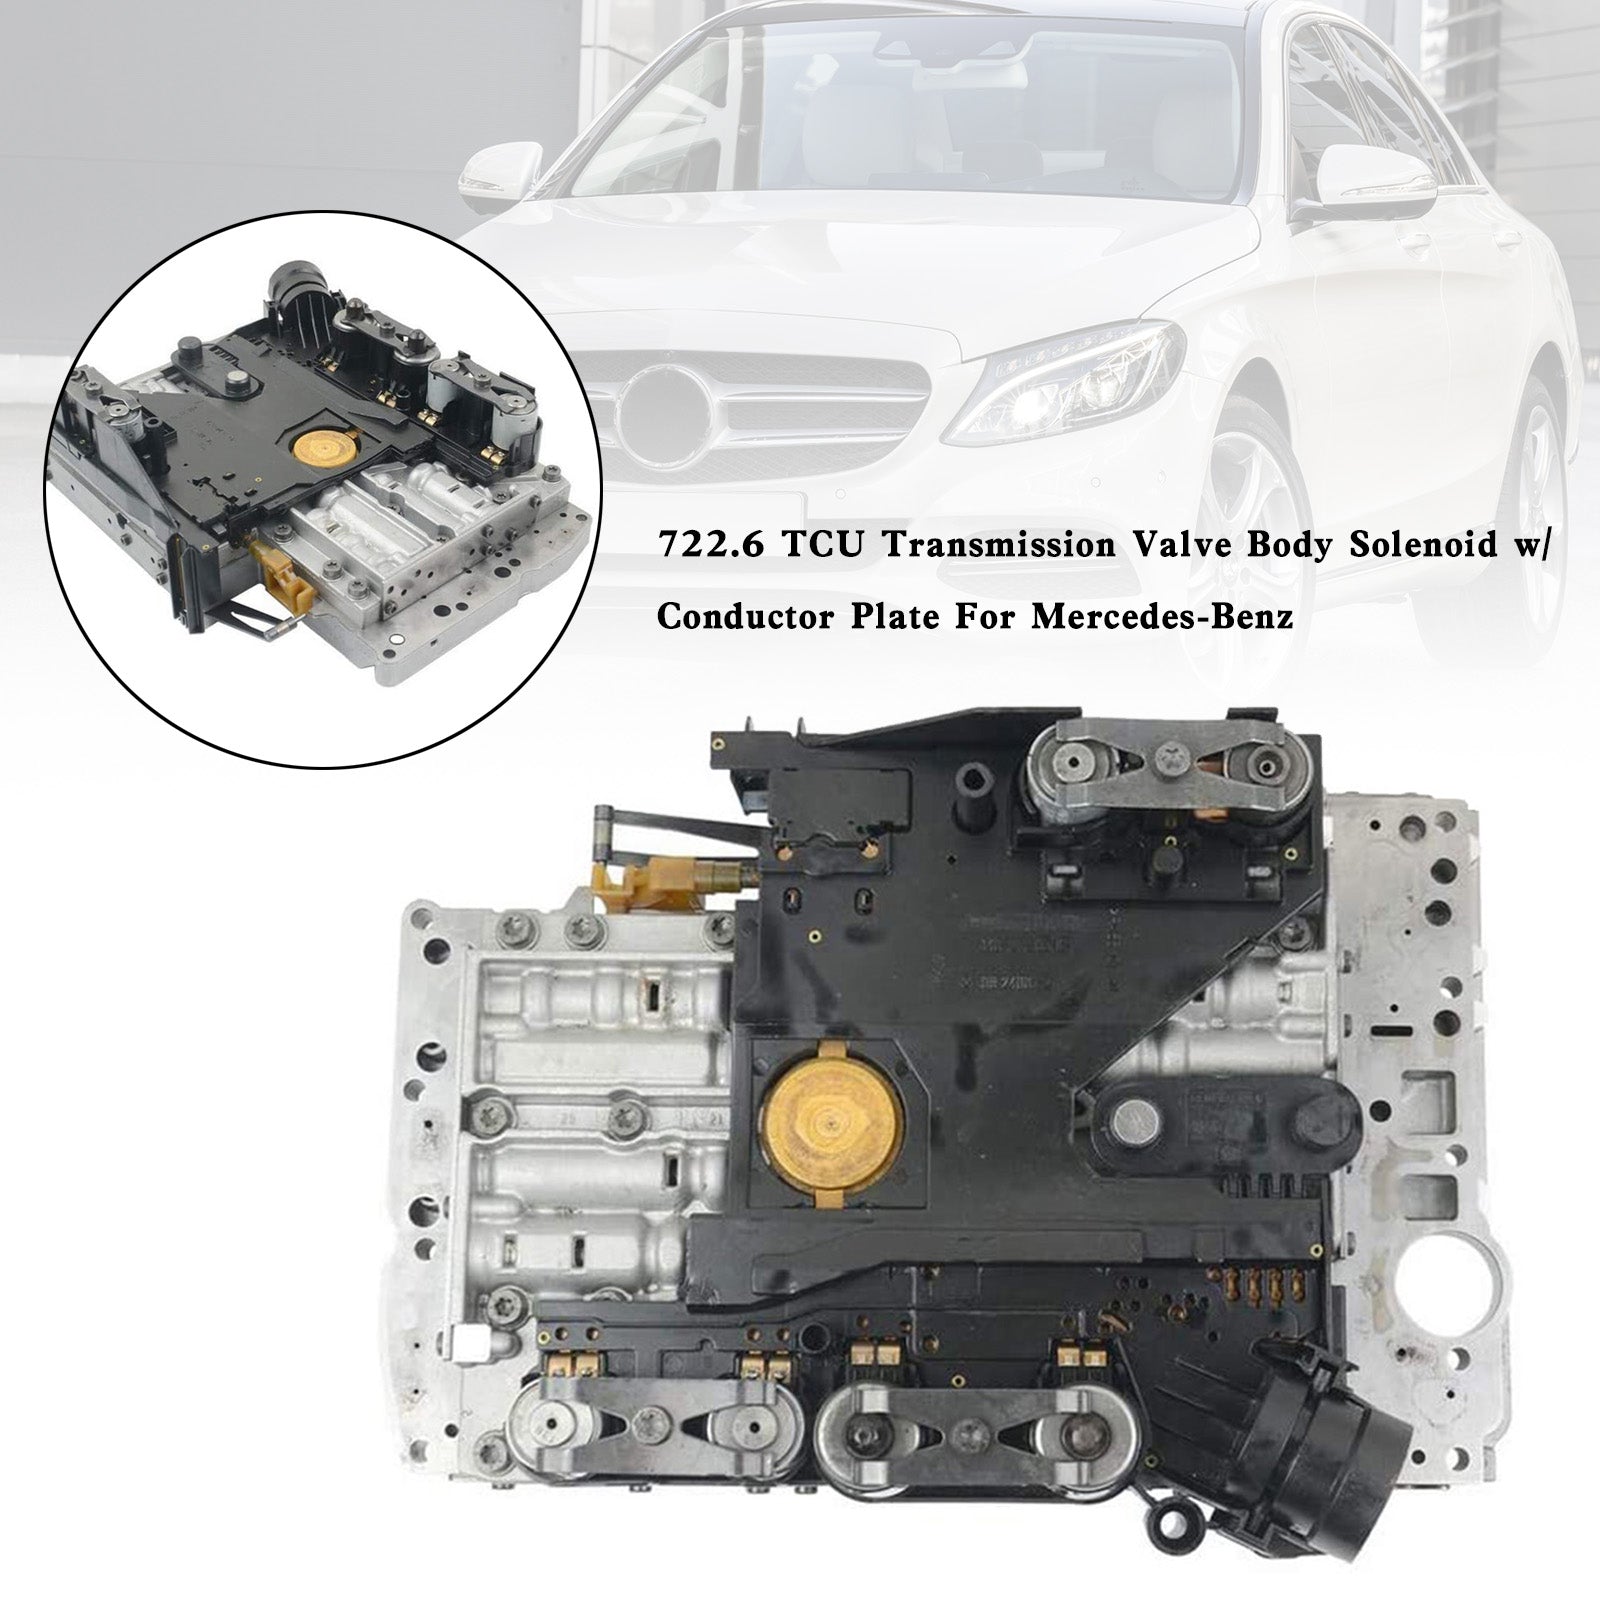 S320 S420 1994-1999 / S430 2000-2006 722.6 TCU Solenoide del cuerpo de la válvula de transmisión con placa conductora Mercedes-Benz